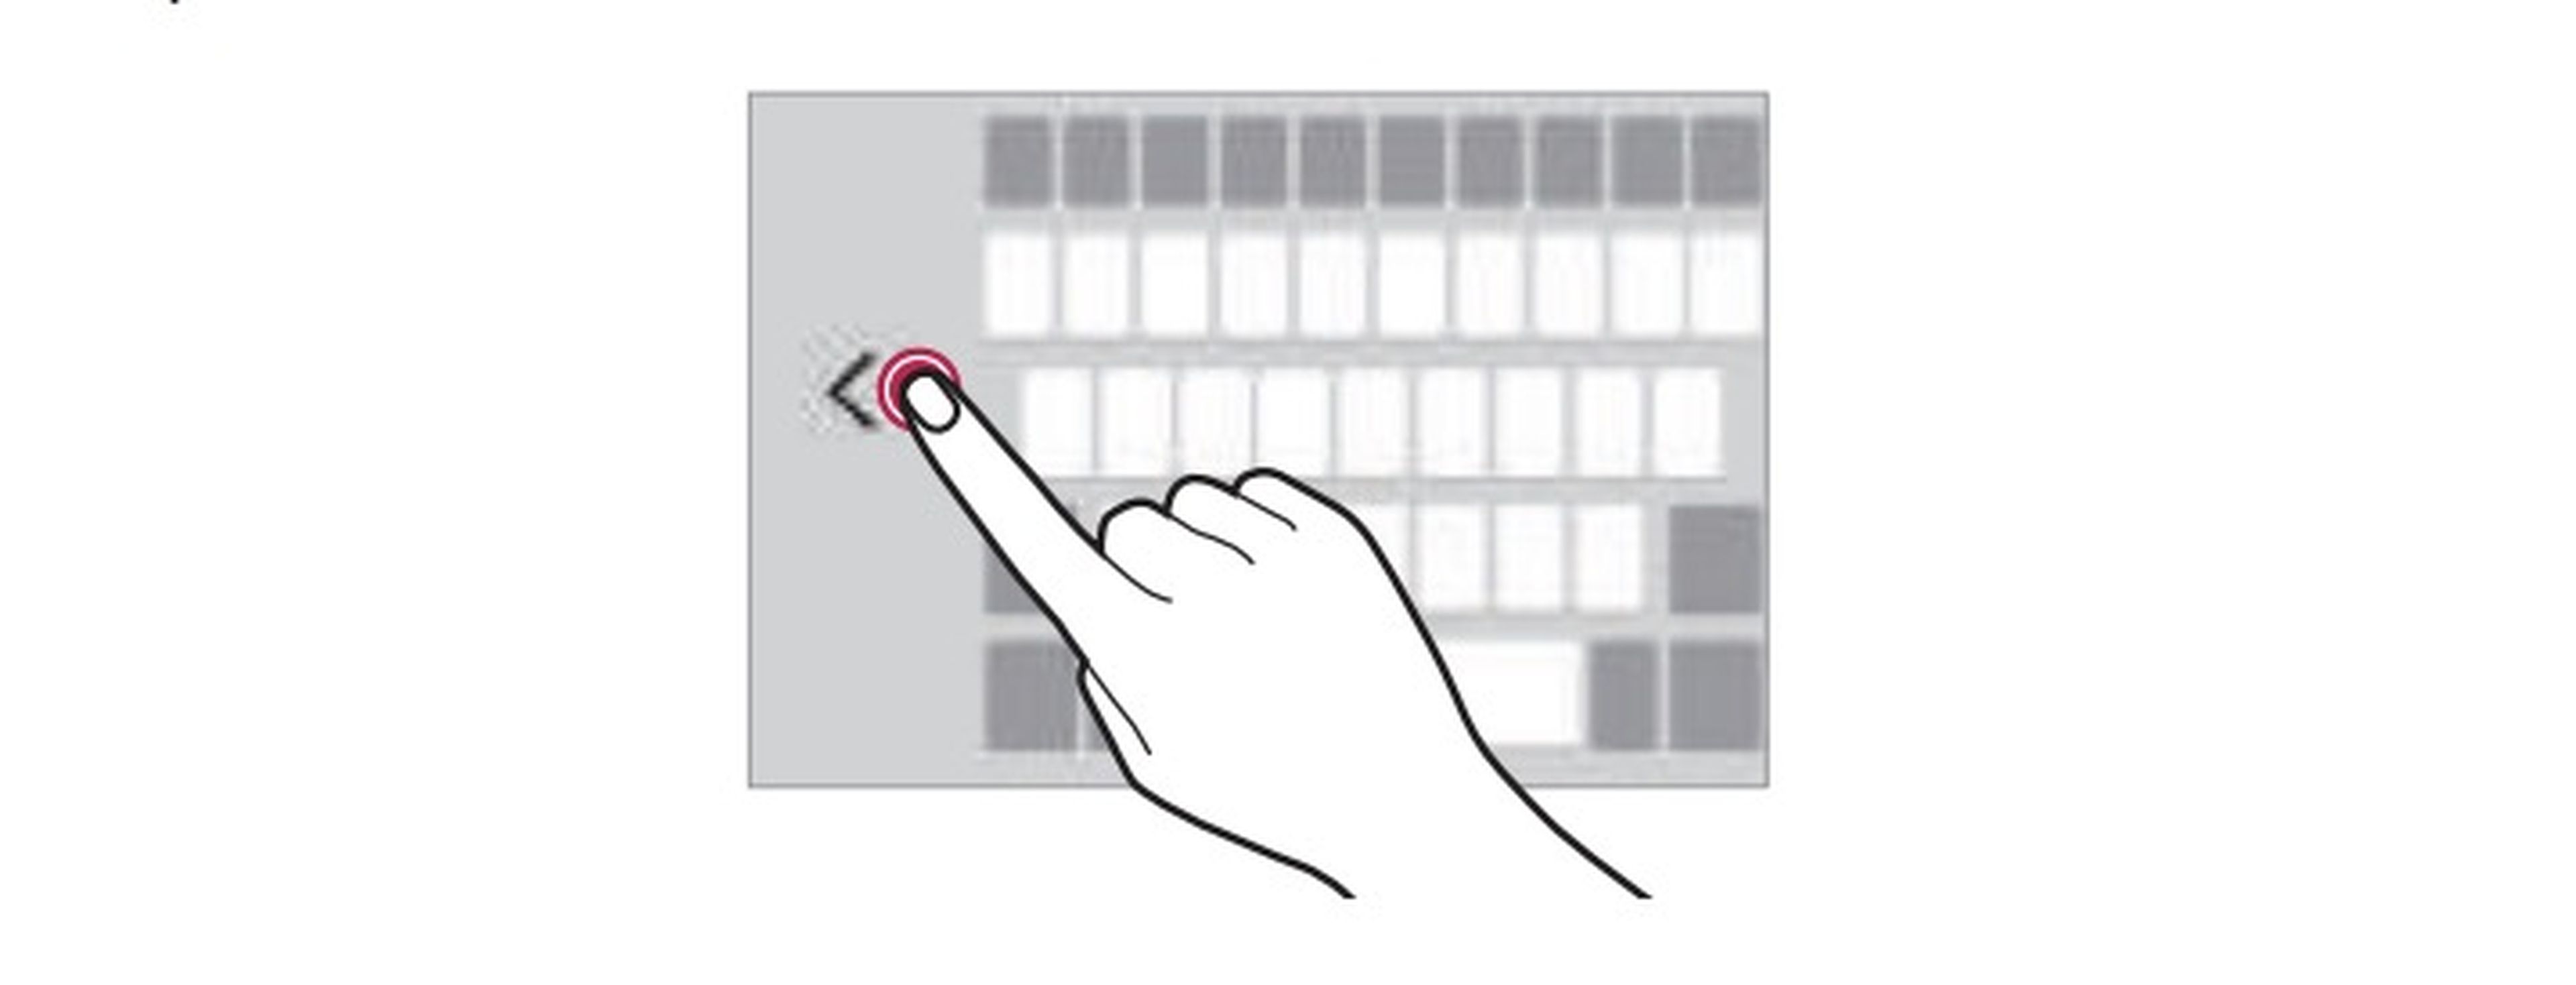 LG K10 - teclado a una mano